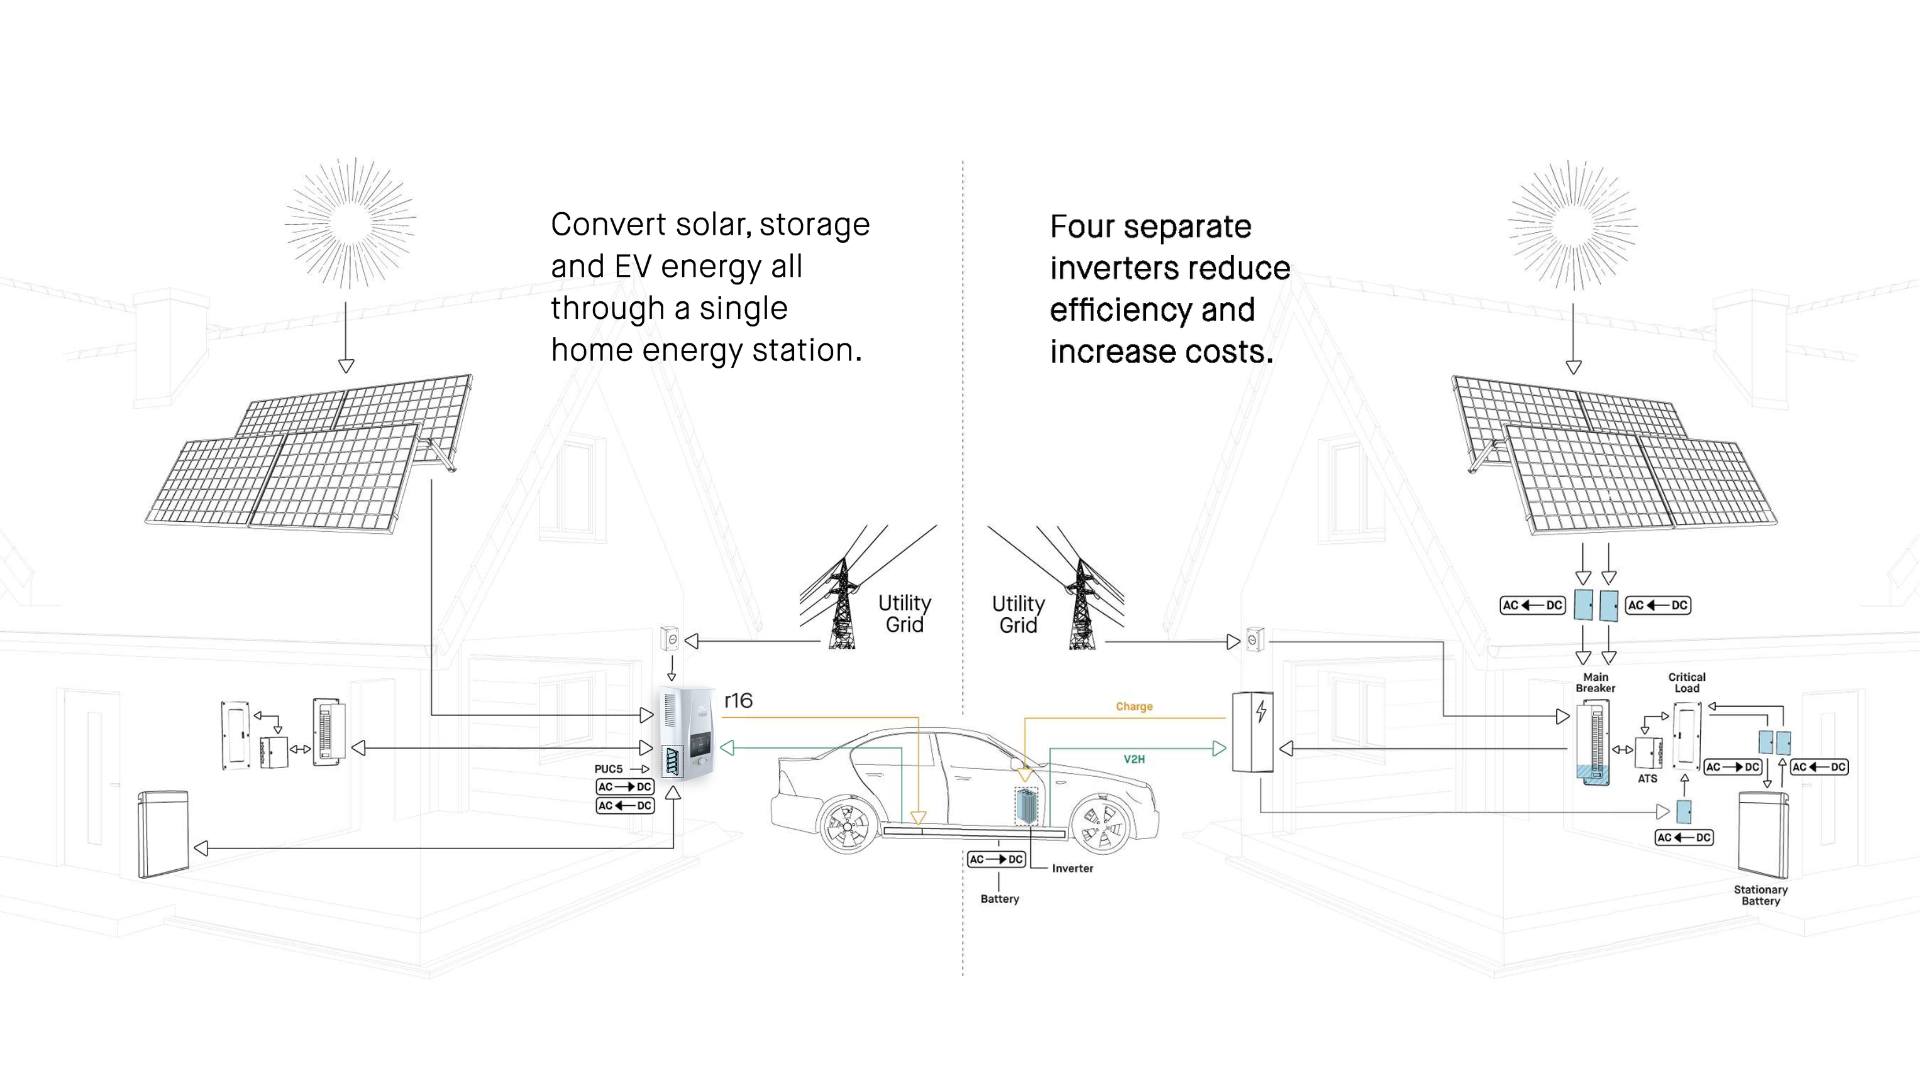 DC Home Energy Station vs AC charger setup